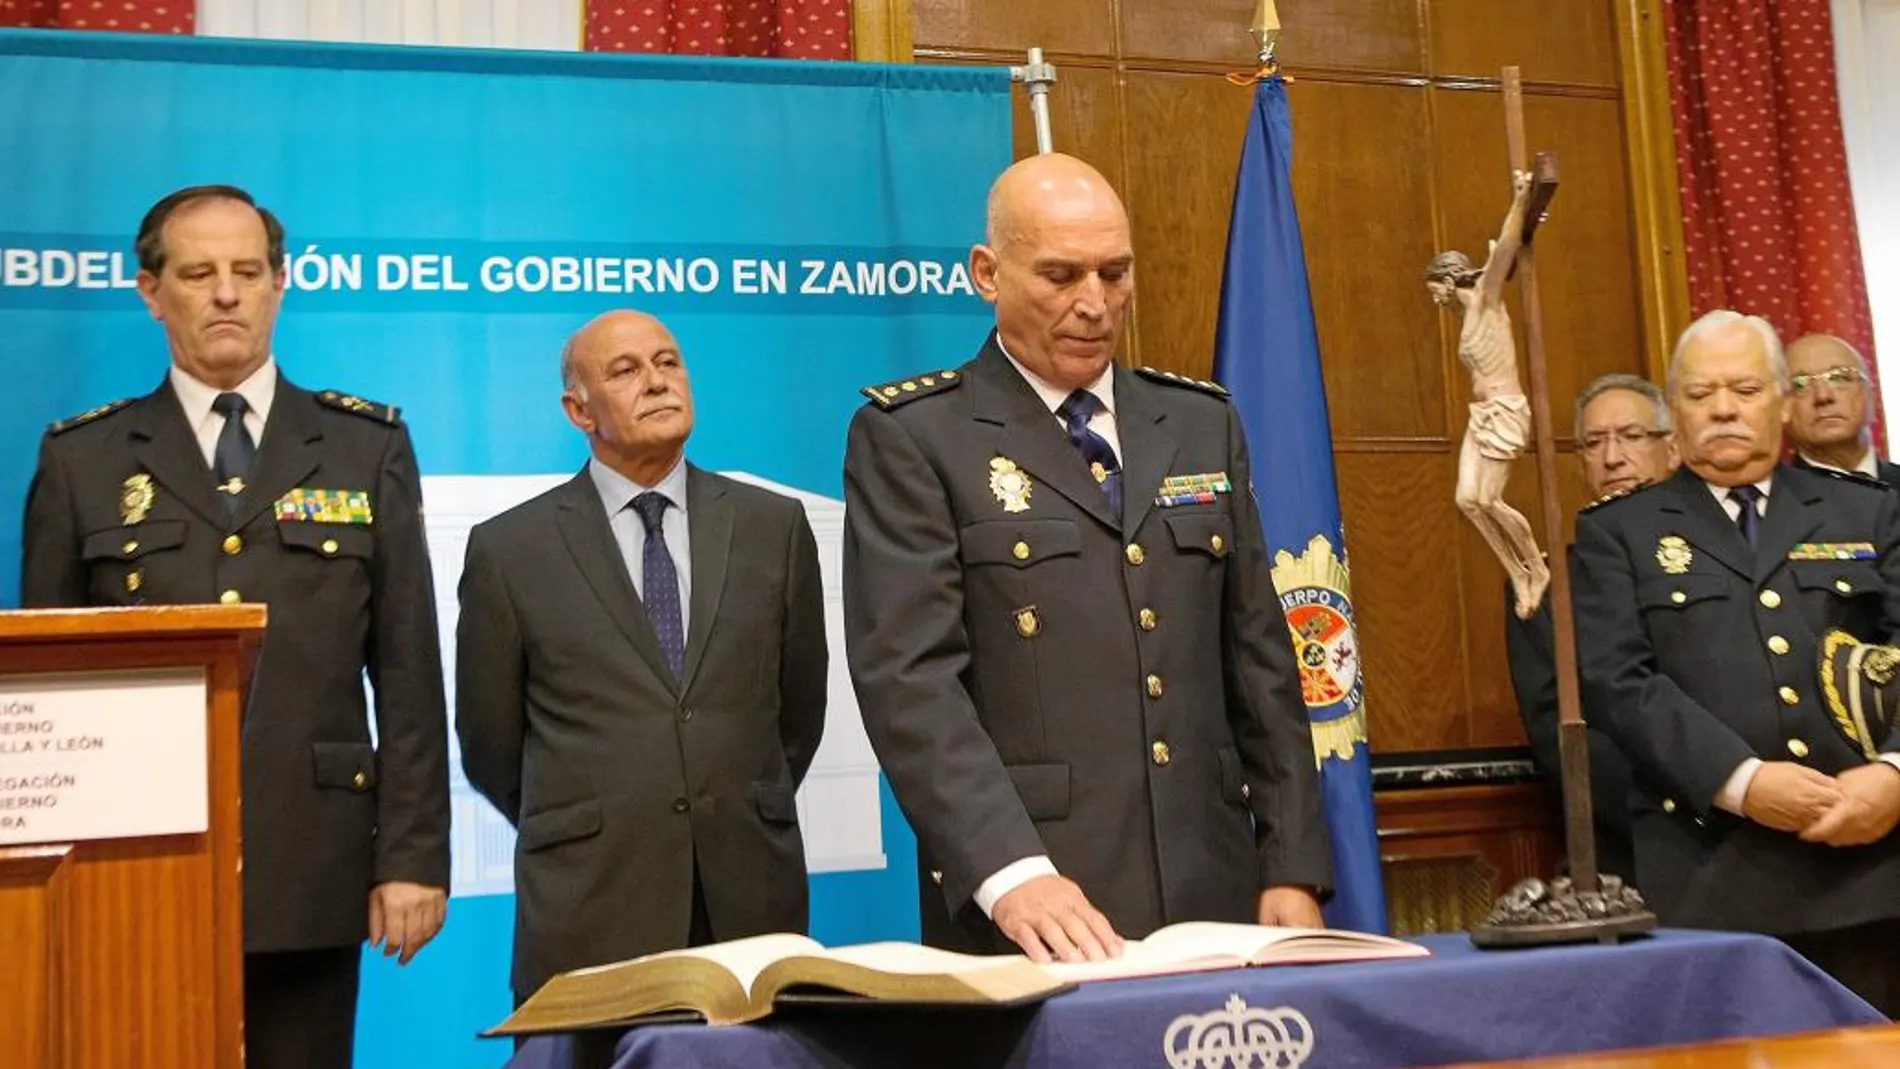 El subdelegado del Gobierno, Jerónimo García, preside la toma de posesión del nuevo comisario jefe de la Policía Nacional de Zamora, Clemente Castaño Moreno